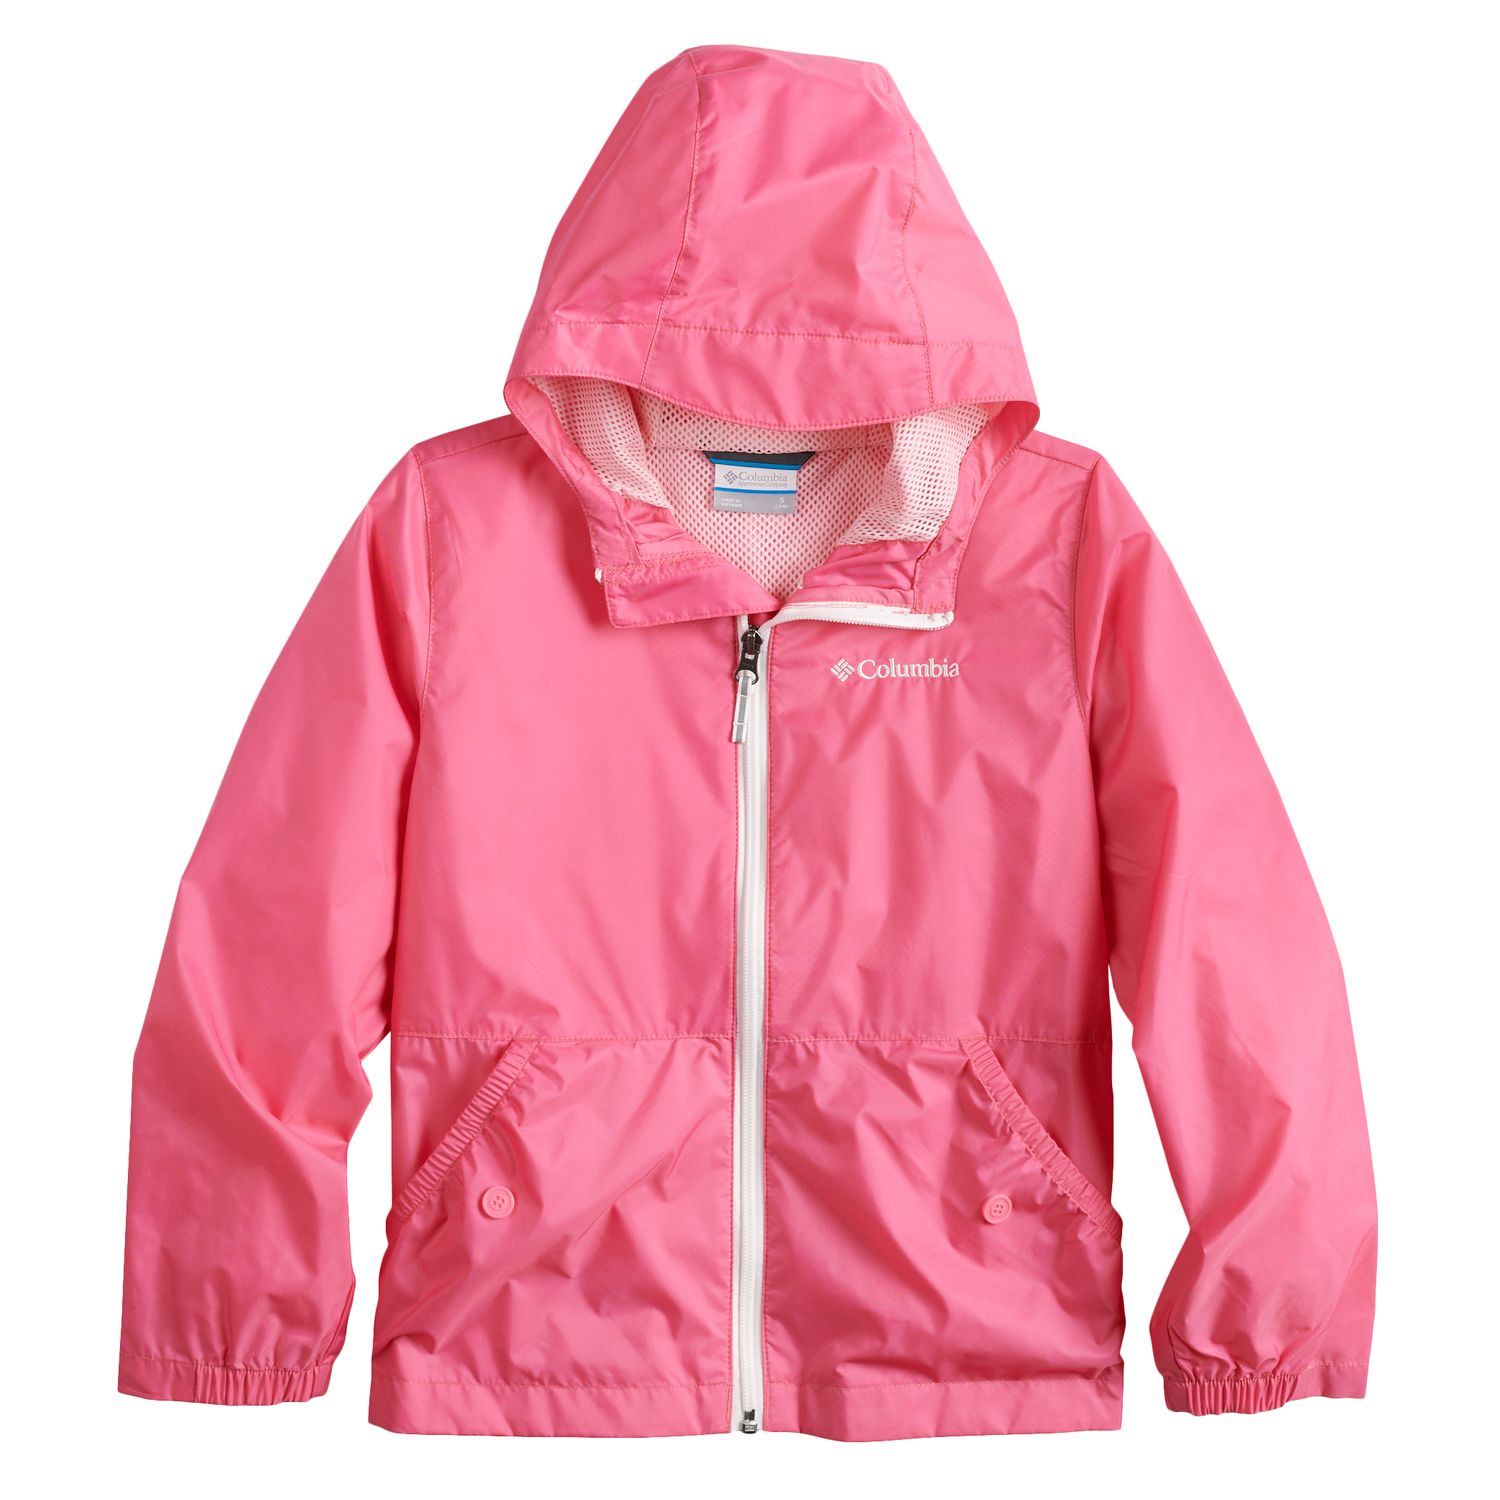 toddler girl columbia jacket